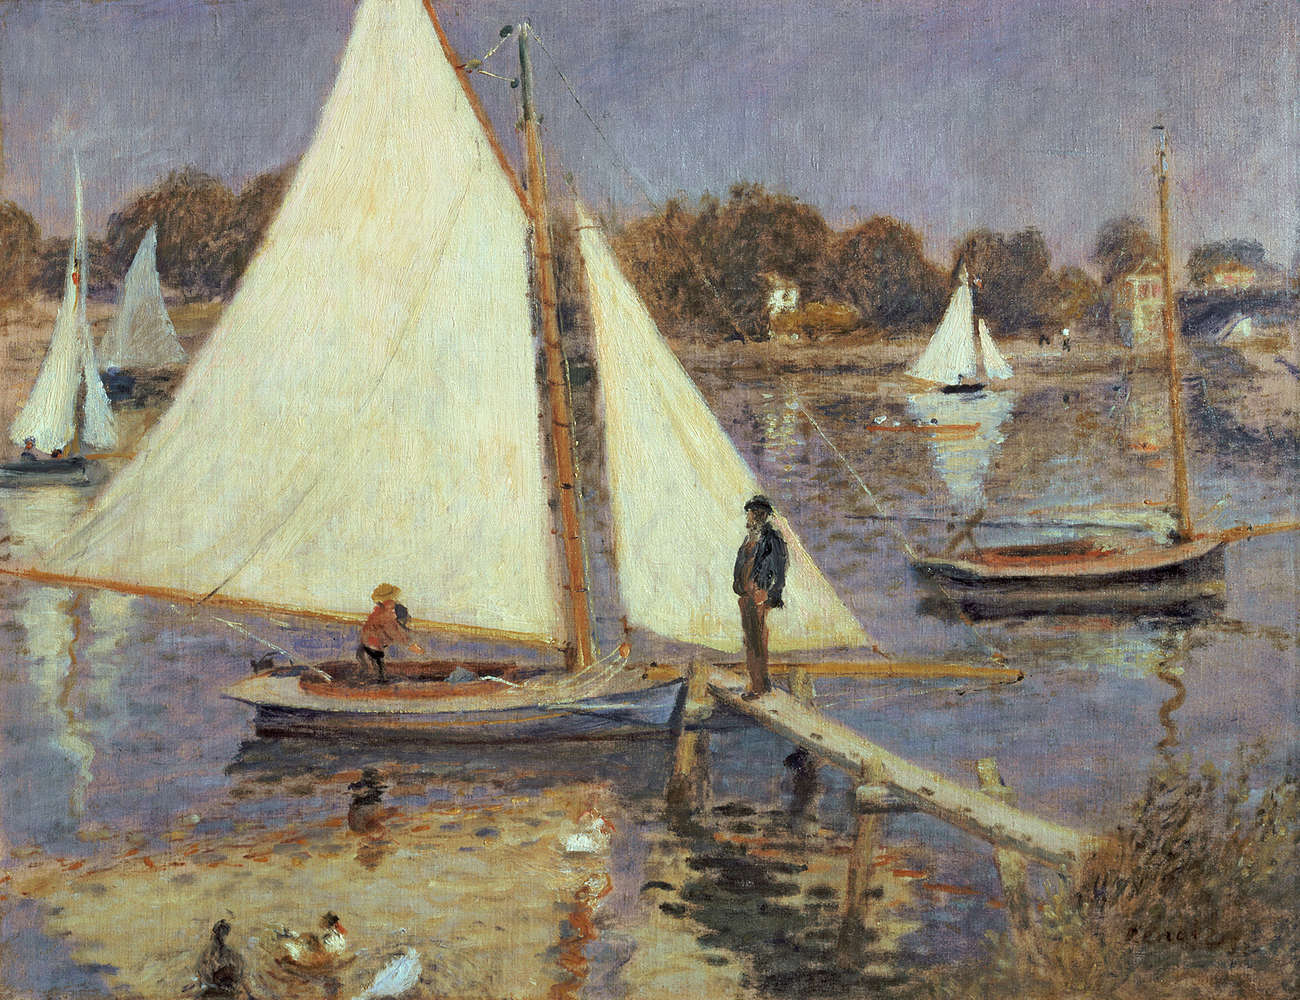             Papier peint panoramique "La Seine à Argenteuil" de Pierre Auguste Renoir
        